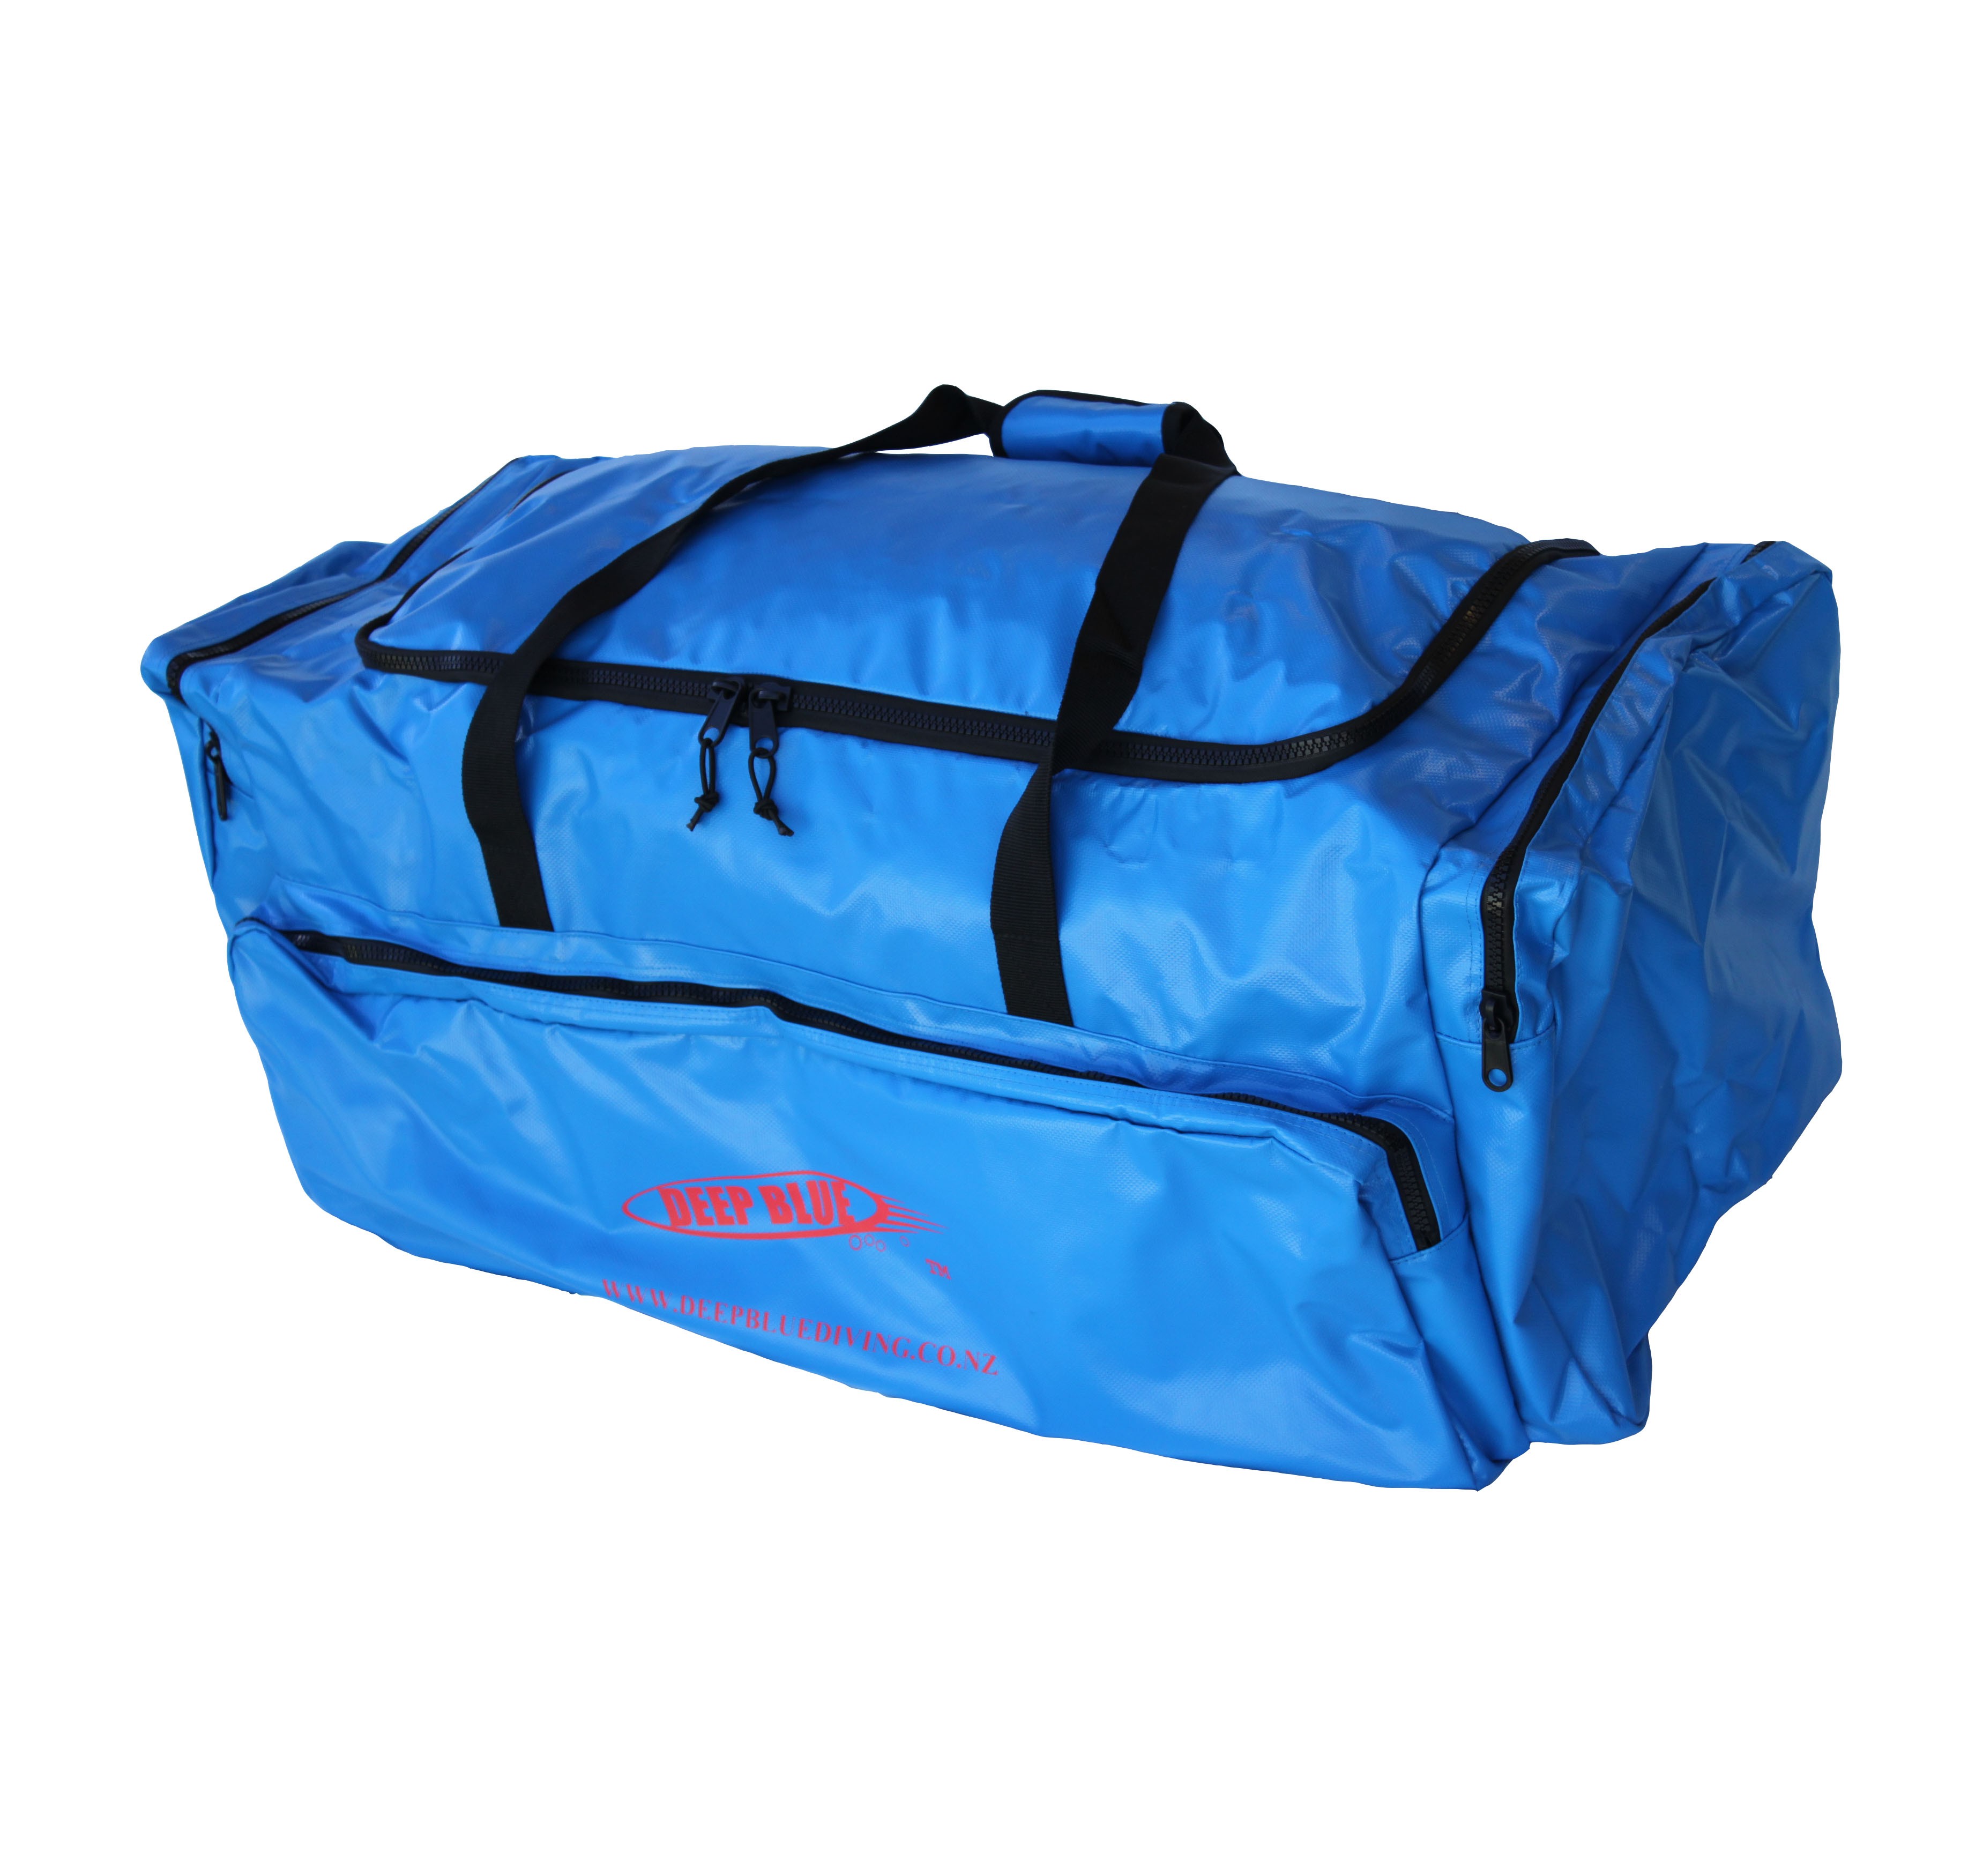 DEEP BLUE - Dive Gear Bag - Large Blue